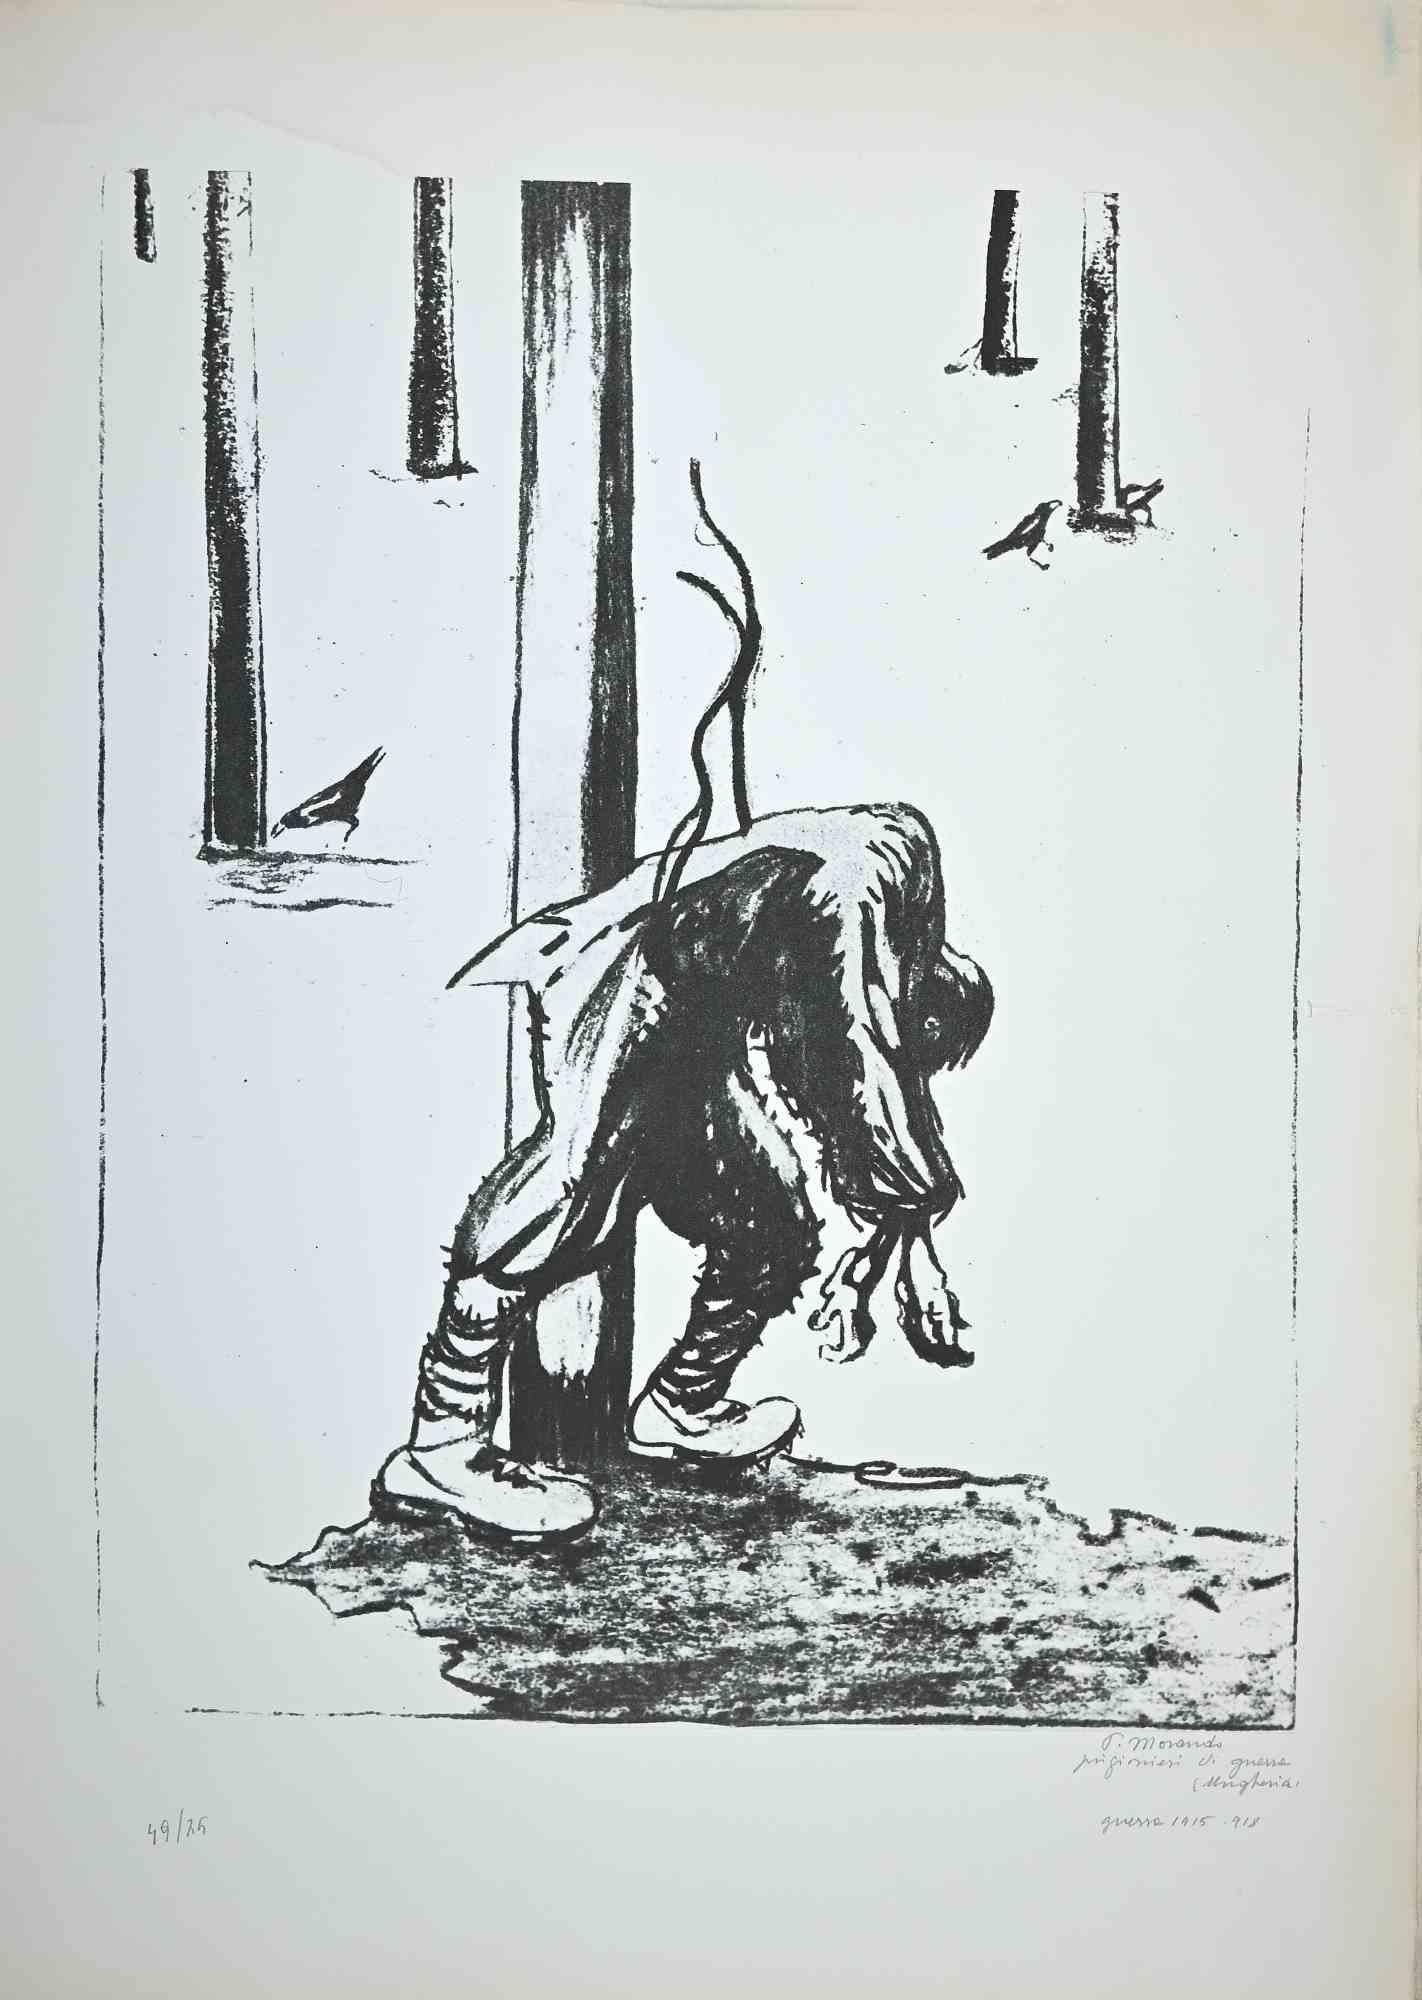 Prisonnier est une œuvre d'art originale réalisée par l'artiste italien  Pietro Morando  (Alessandria 1889- 1980).

Lithographie.

Signé à la main en bas à droite au crayon, titré.

Numérotée en bas à gauche, l'édition est de 49/75